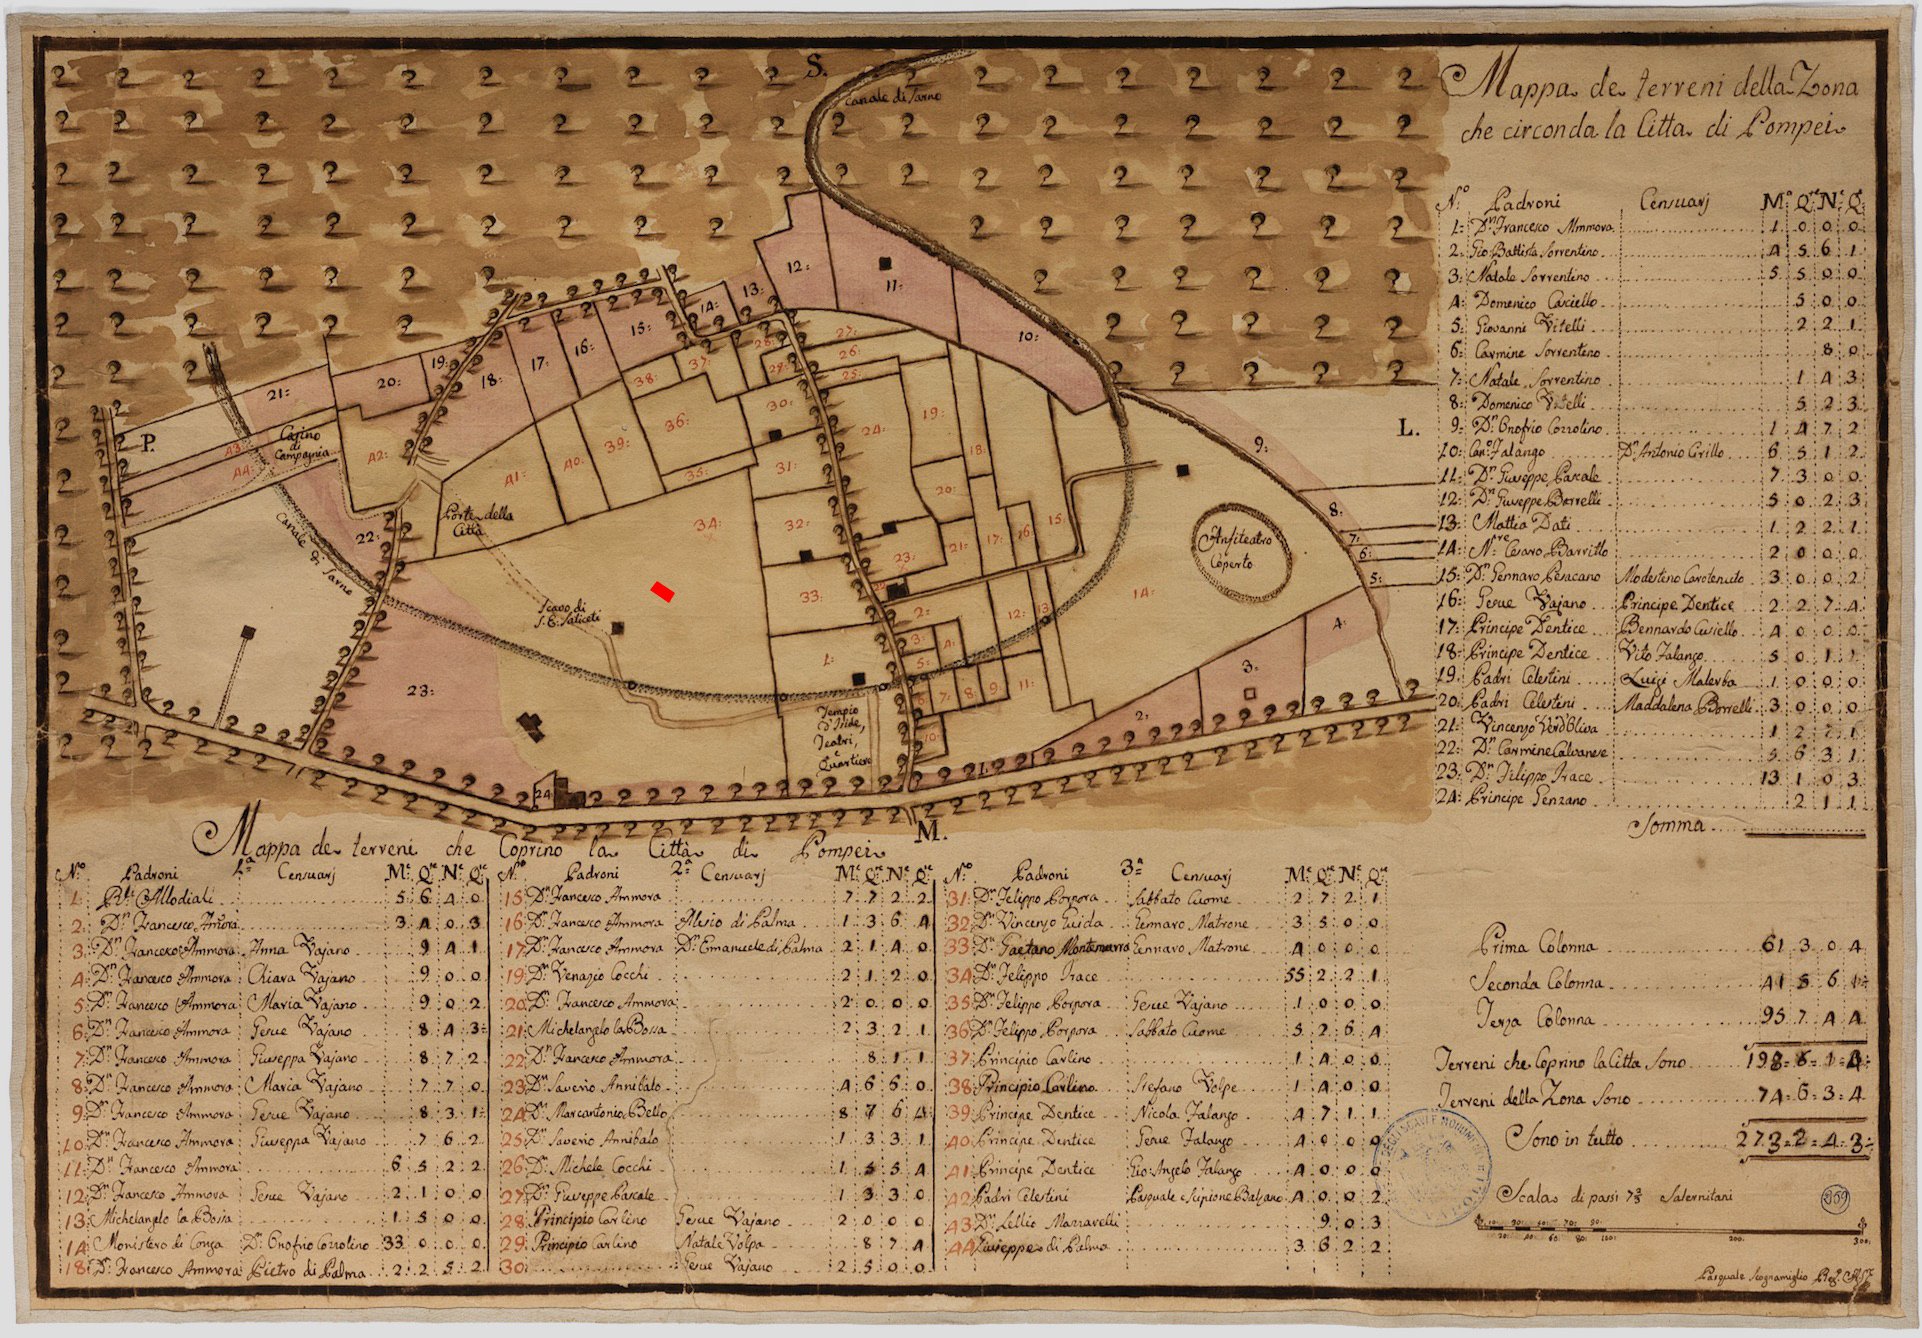 Mapa catastral de la ciudad de Pompeya